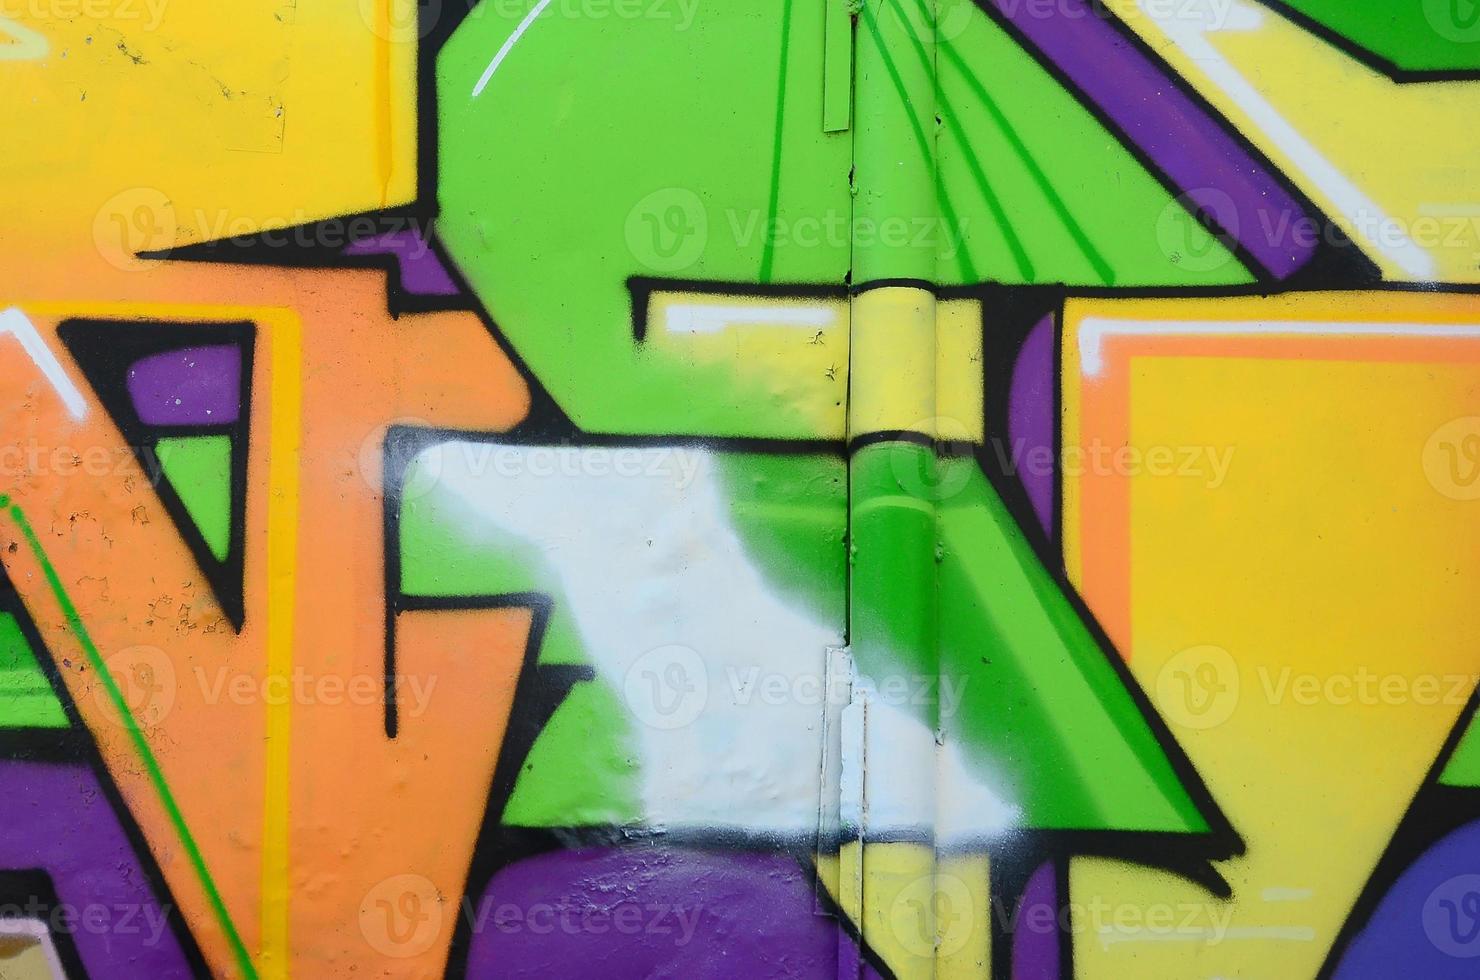 fragmento de desenhos de grafite. a velha parede decorada com manchas de tinta no estilo da cultura da arte de rua. textura de fundo multicolorida foto